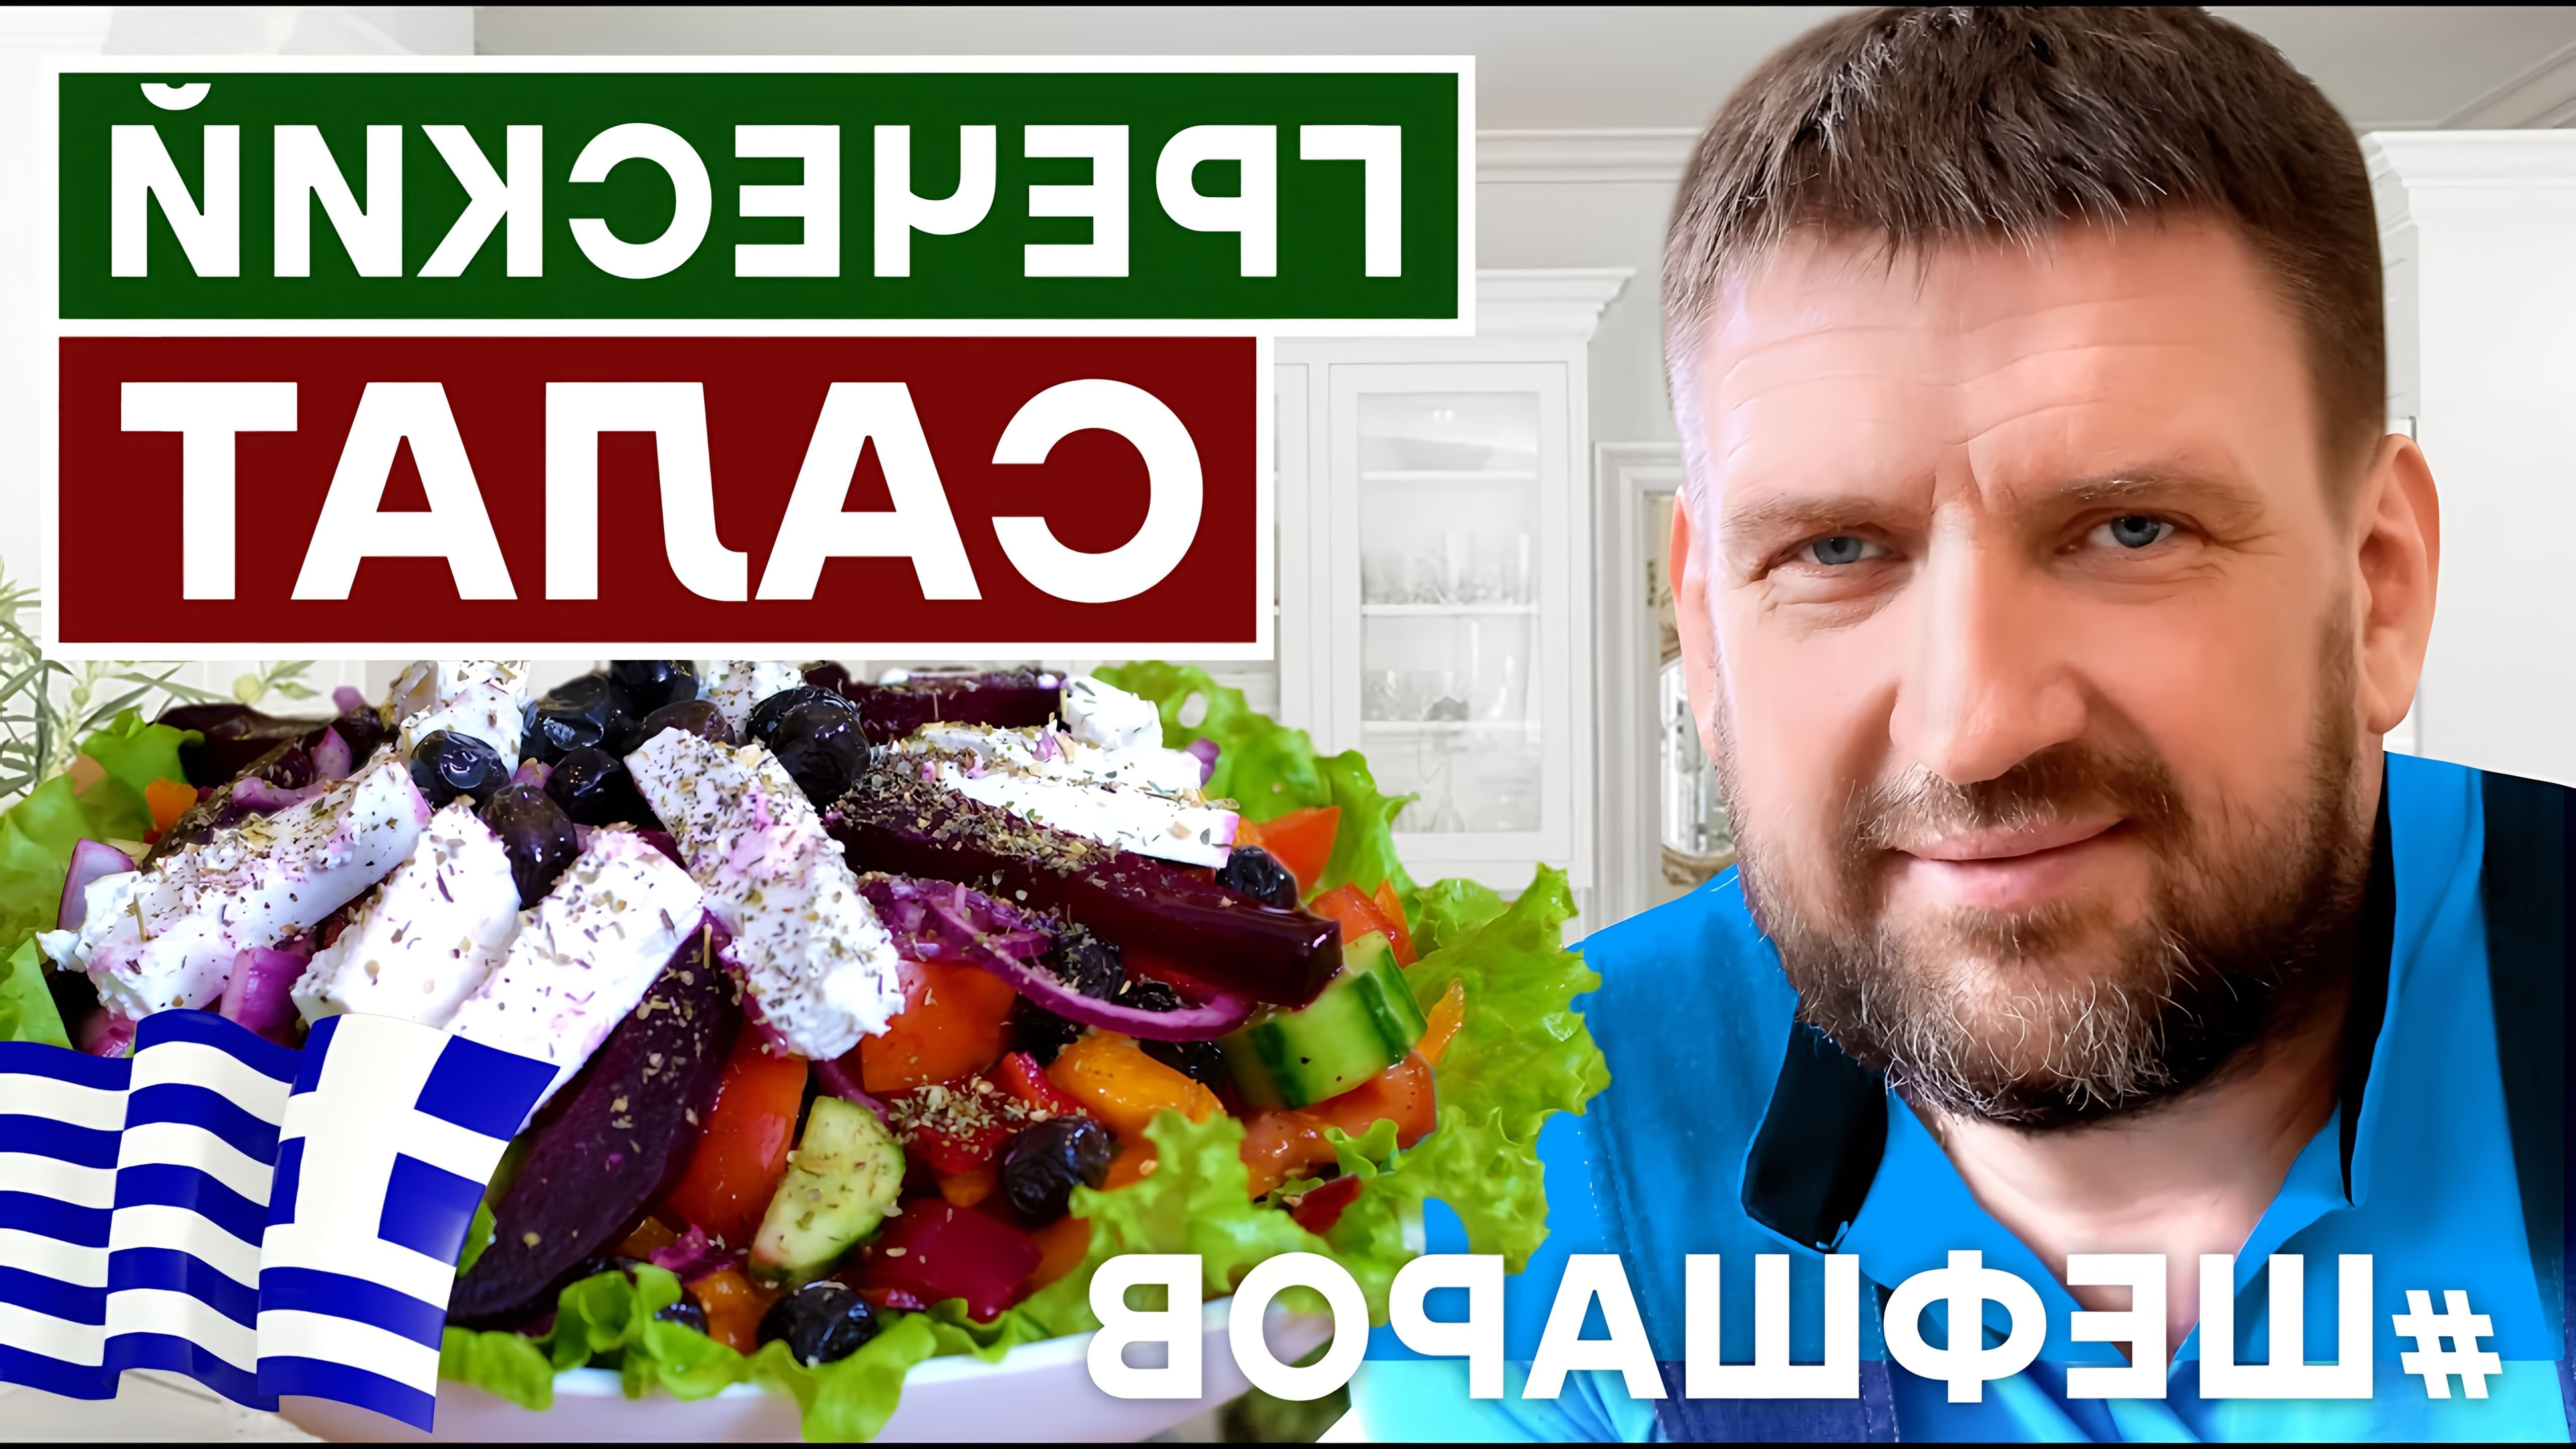 В этом видео демонстрируется процесс приготовления греческого салата, одного из самых популярных блюд греческой кухни